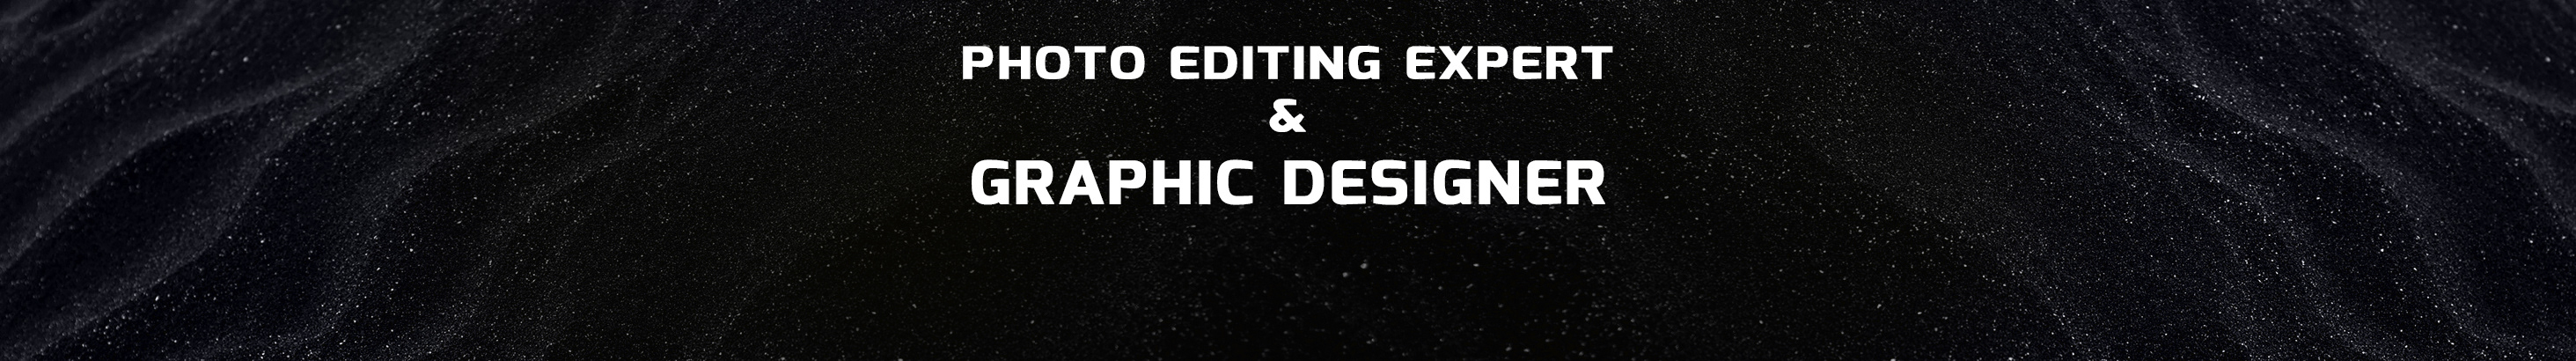 Photo Editor & Graphic Designer's profile banner